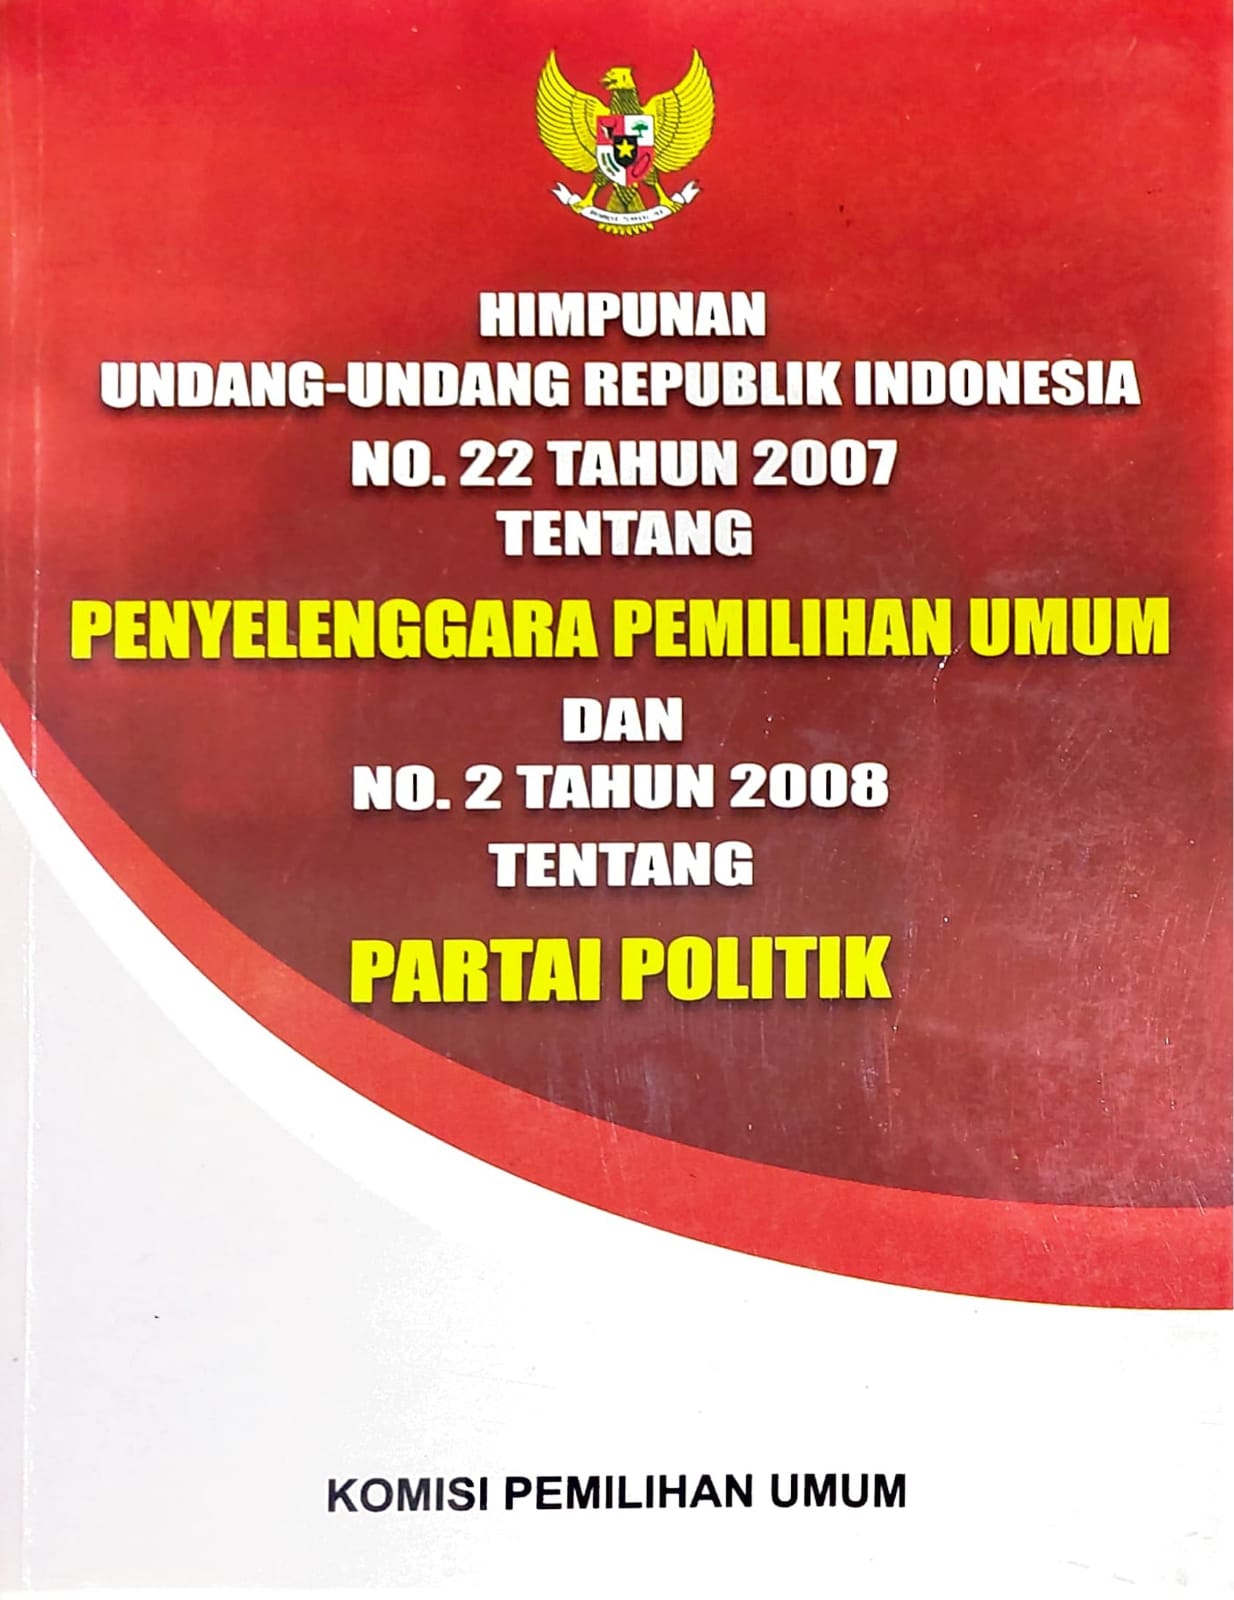 Himpunan undang-undang republik indonesia no. 22 tahun 2007 dan no. 2 tahun 2008